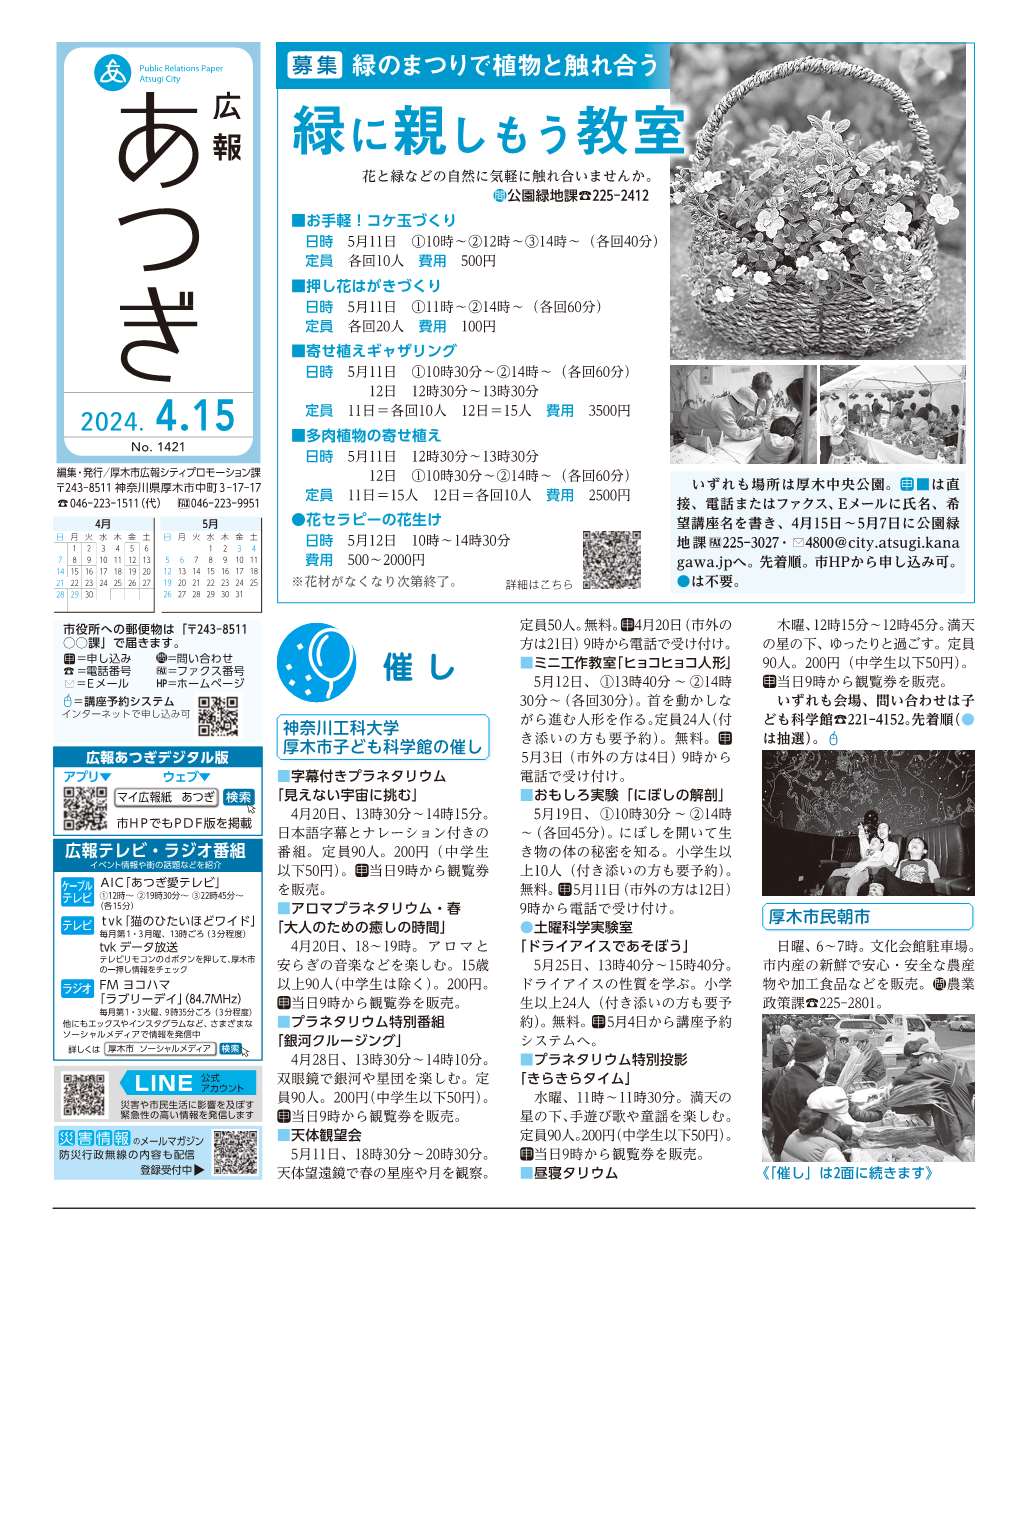 広報あつぎ4月15日号の1面のイメージ画像